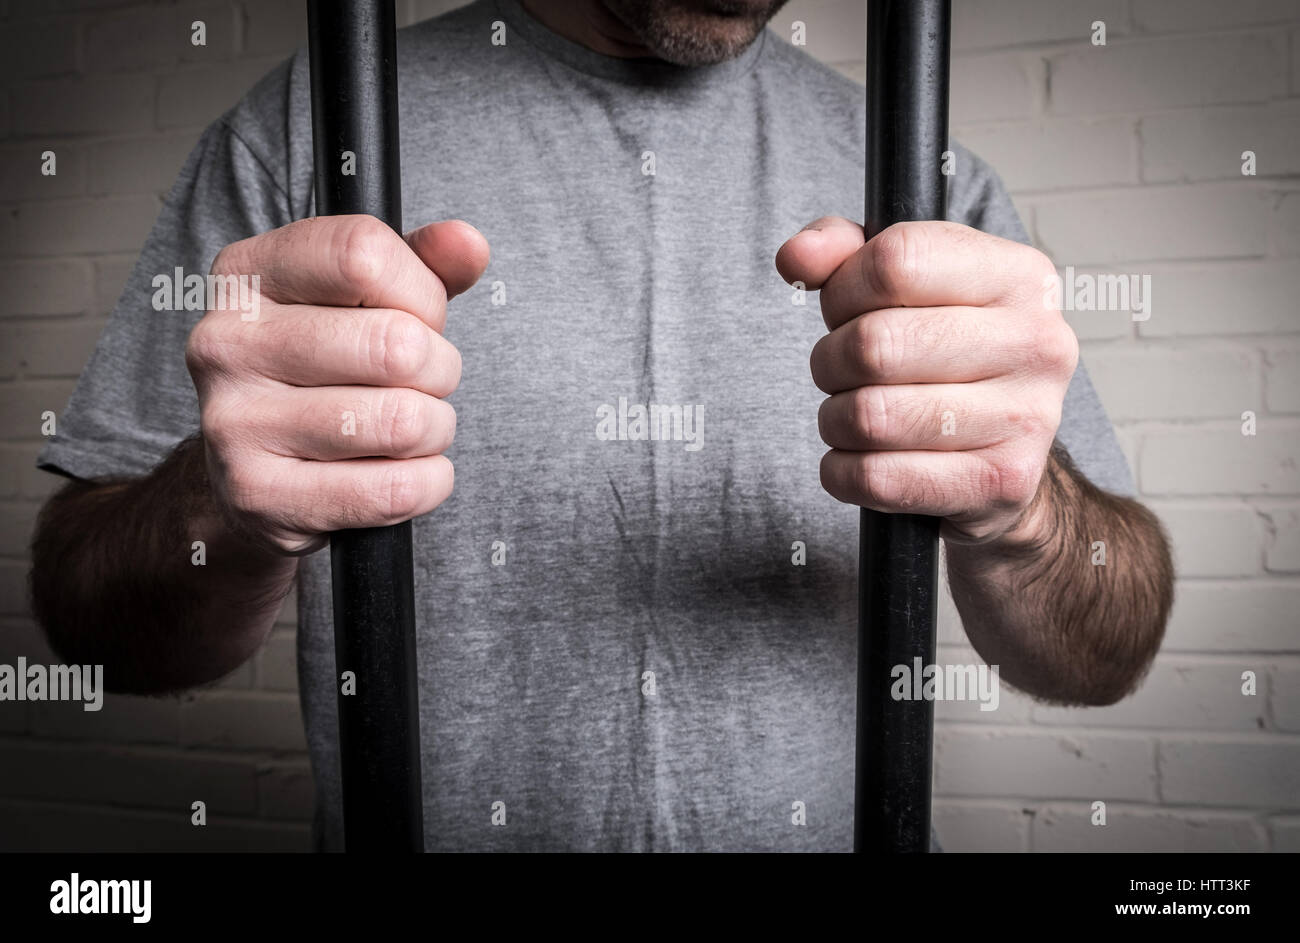 Un prisonnier dans sa cellule de prison en prison. Photo posée par modèle Banque D'Images